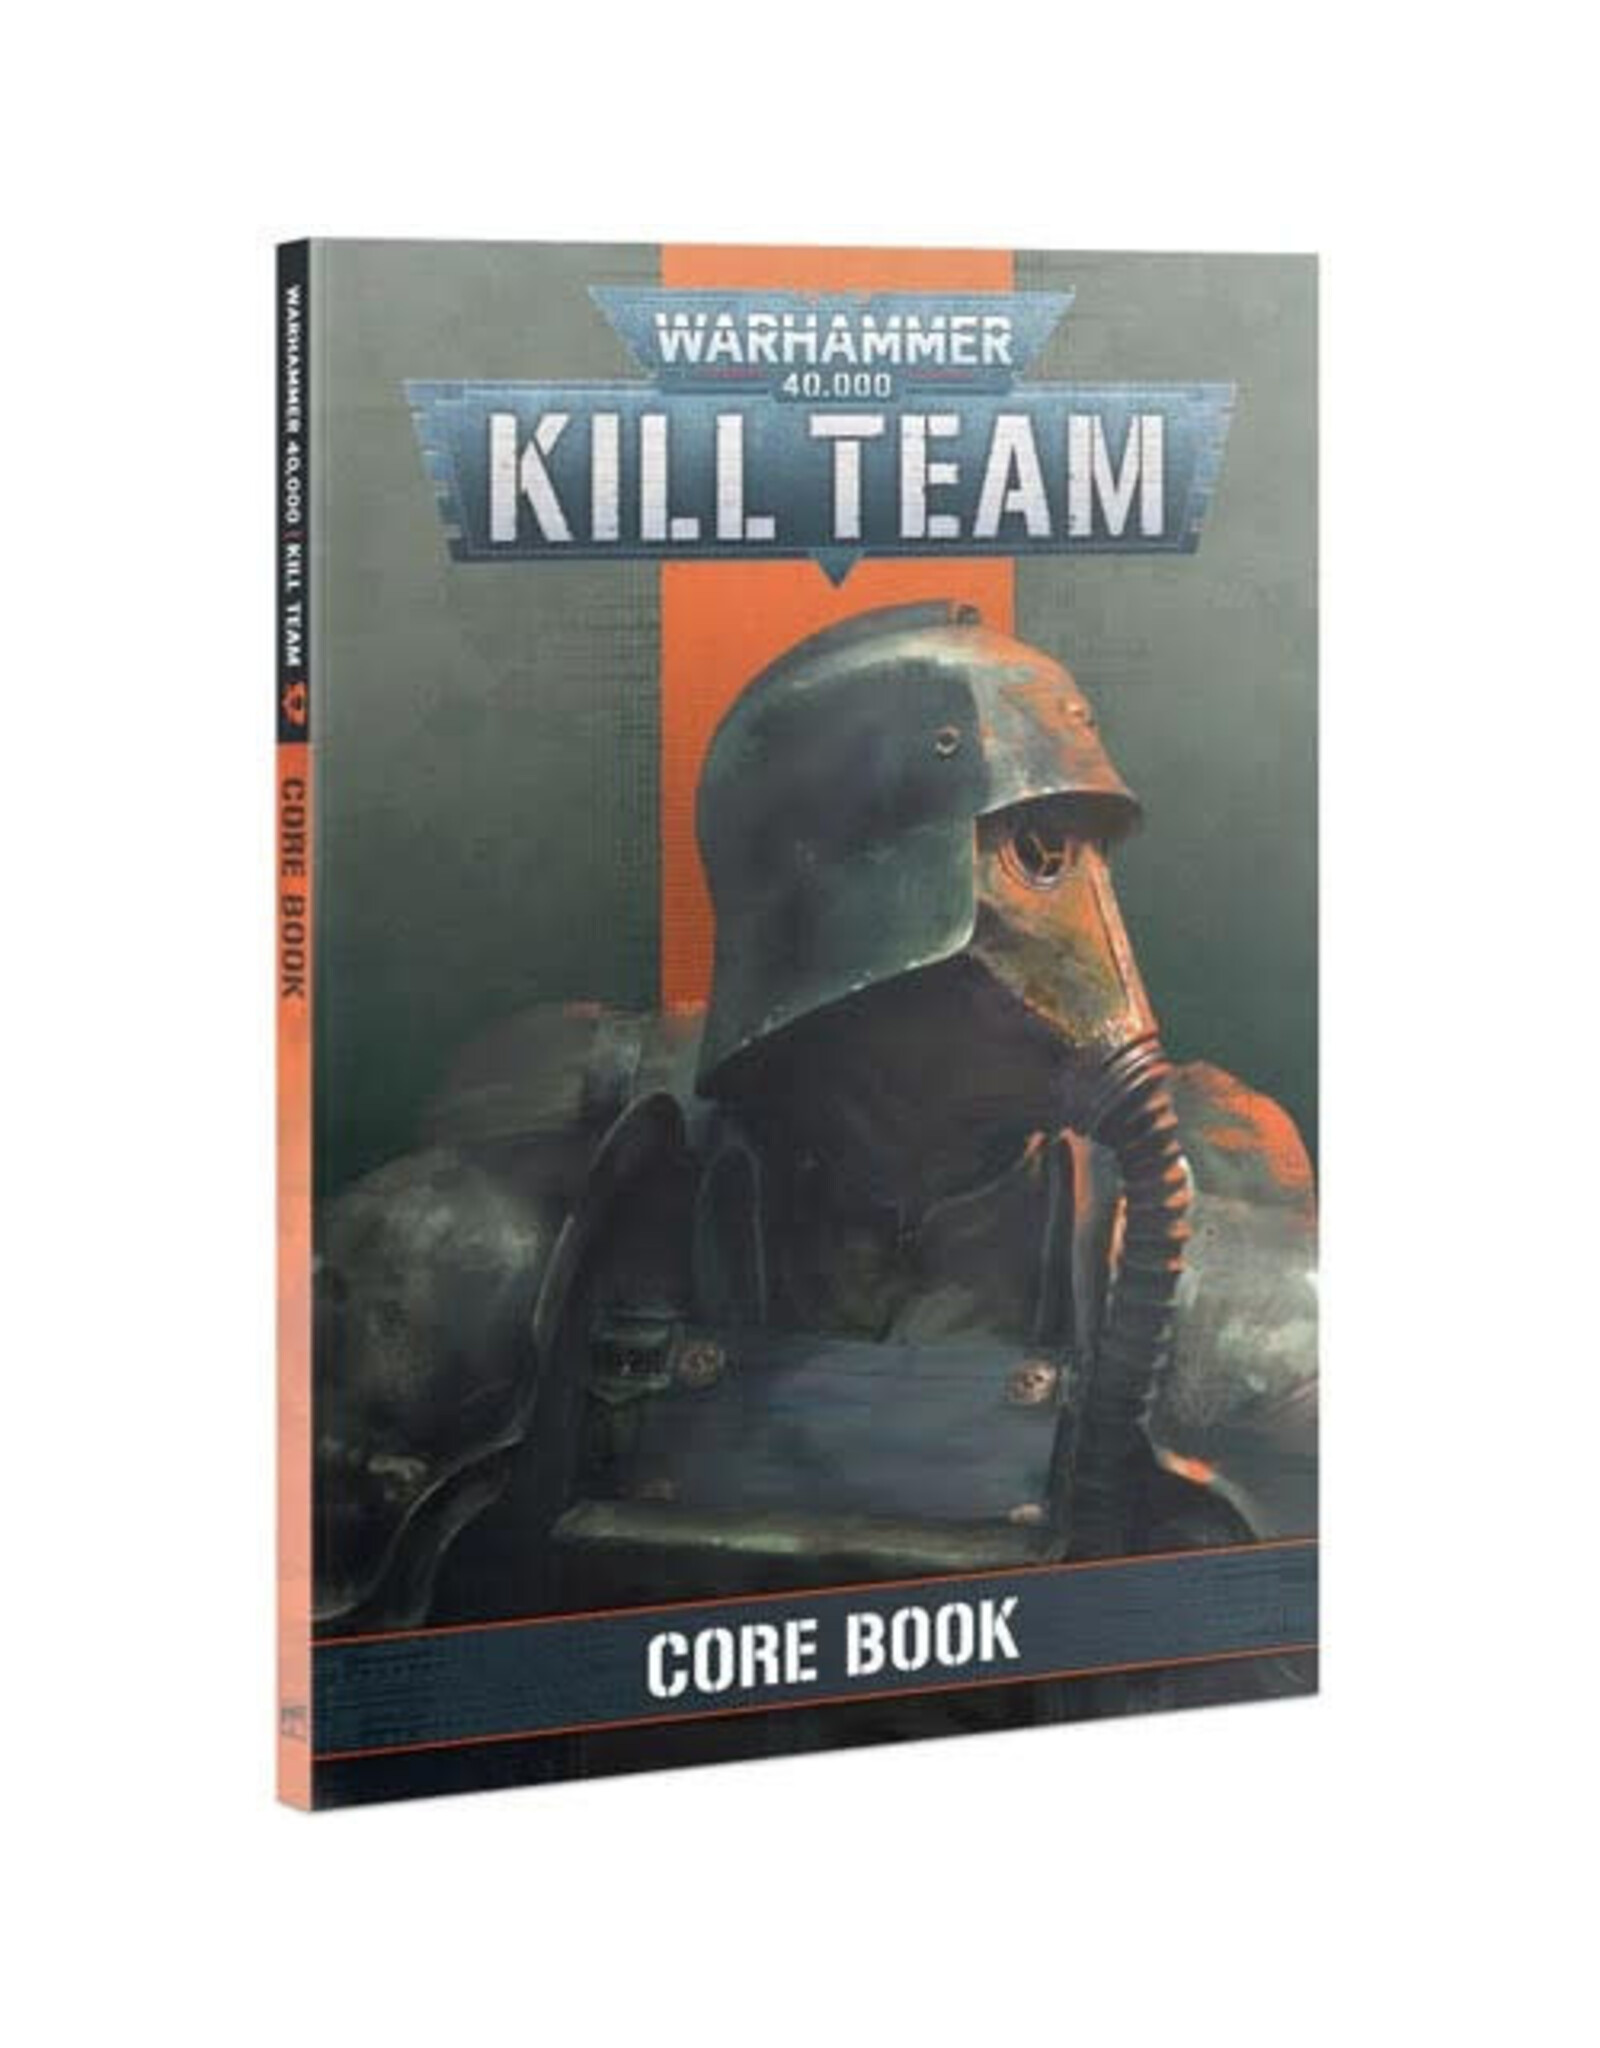 Kill Team Core Book